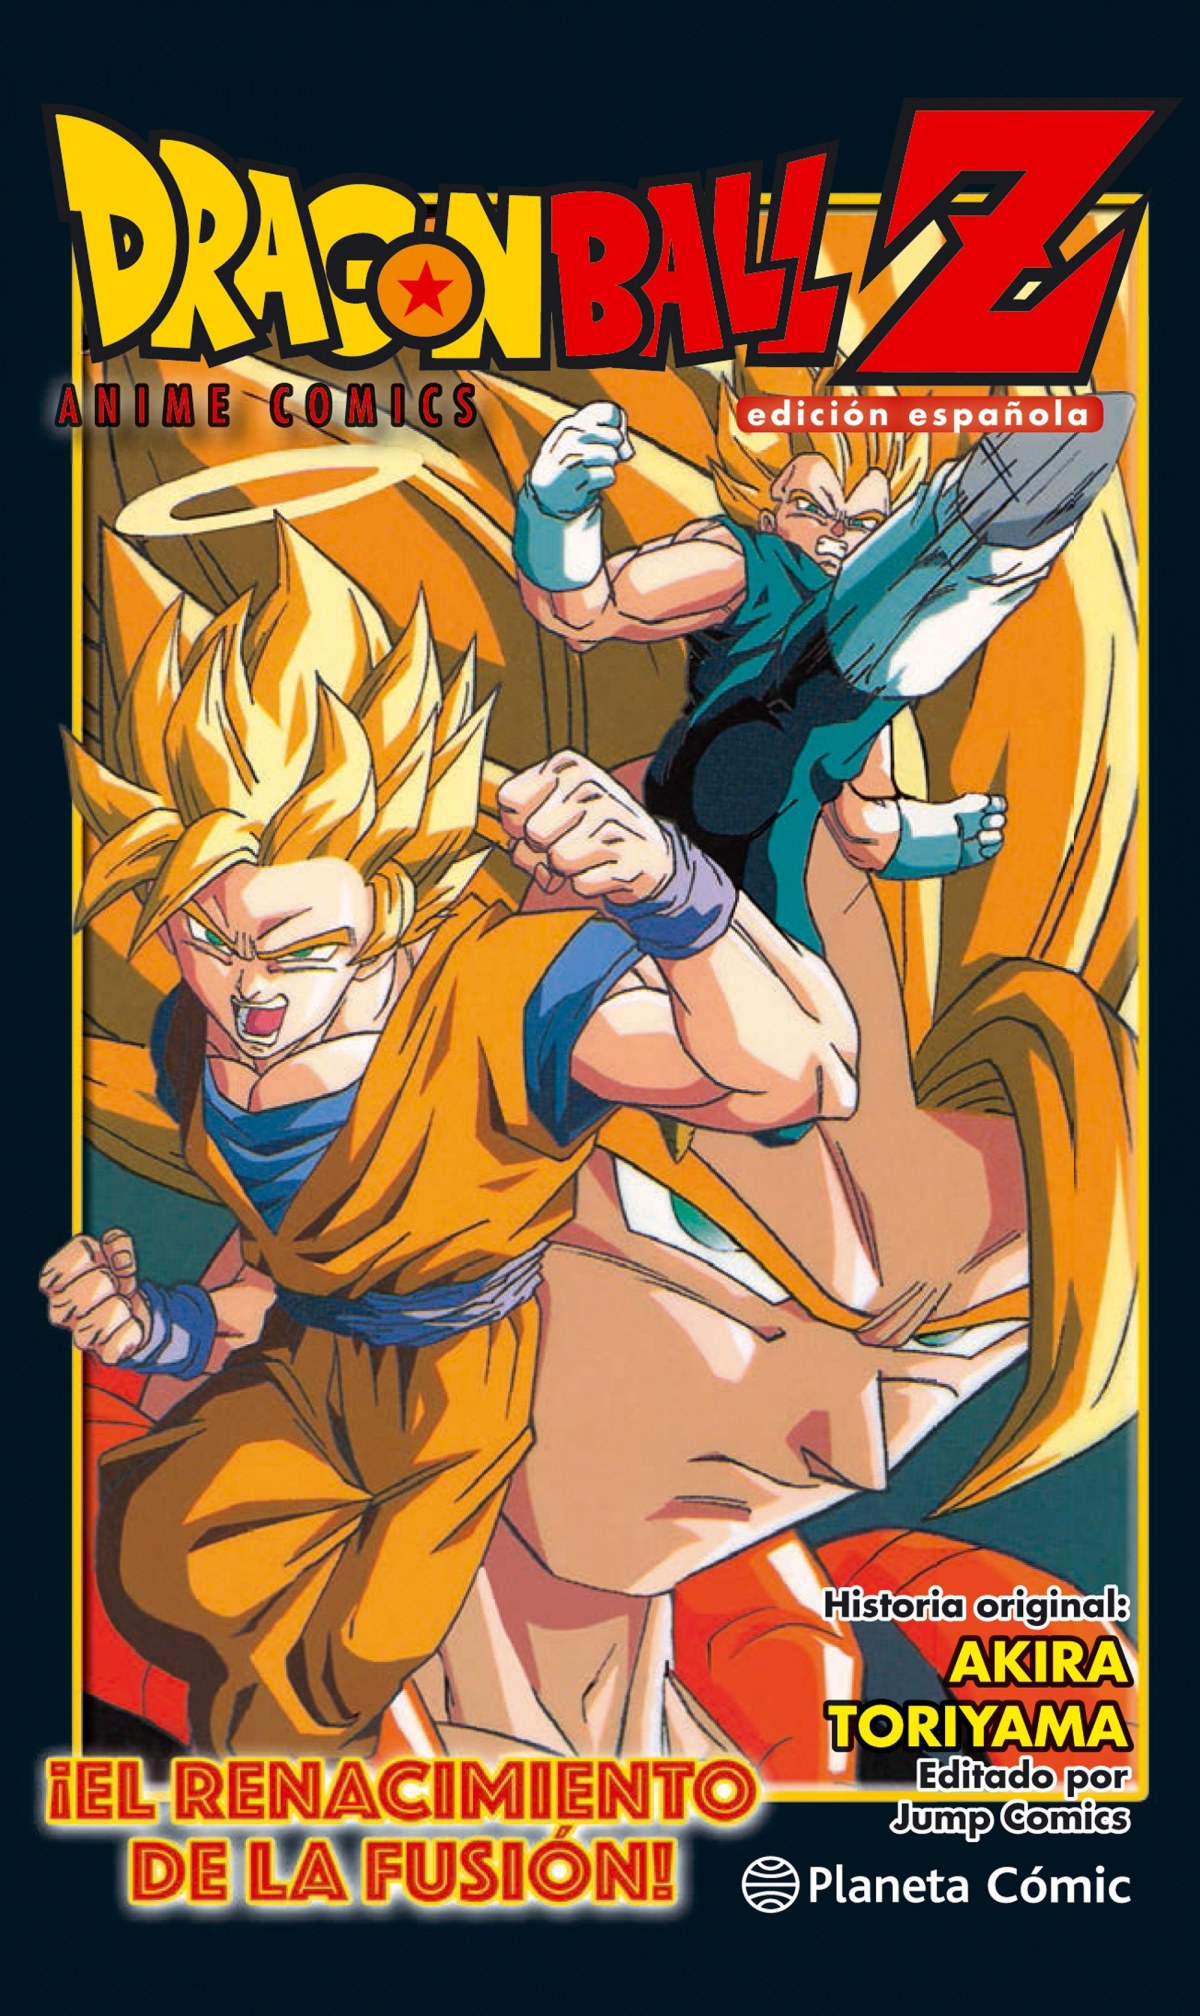 ¡EL RENACIMIENTO DE LA FUSIÓN! Goku y vegeta - Toriyama, Akira